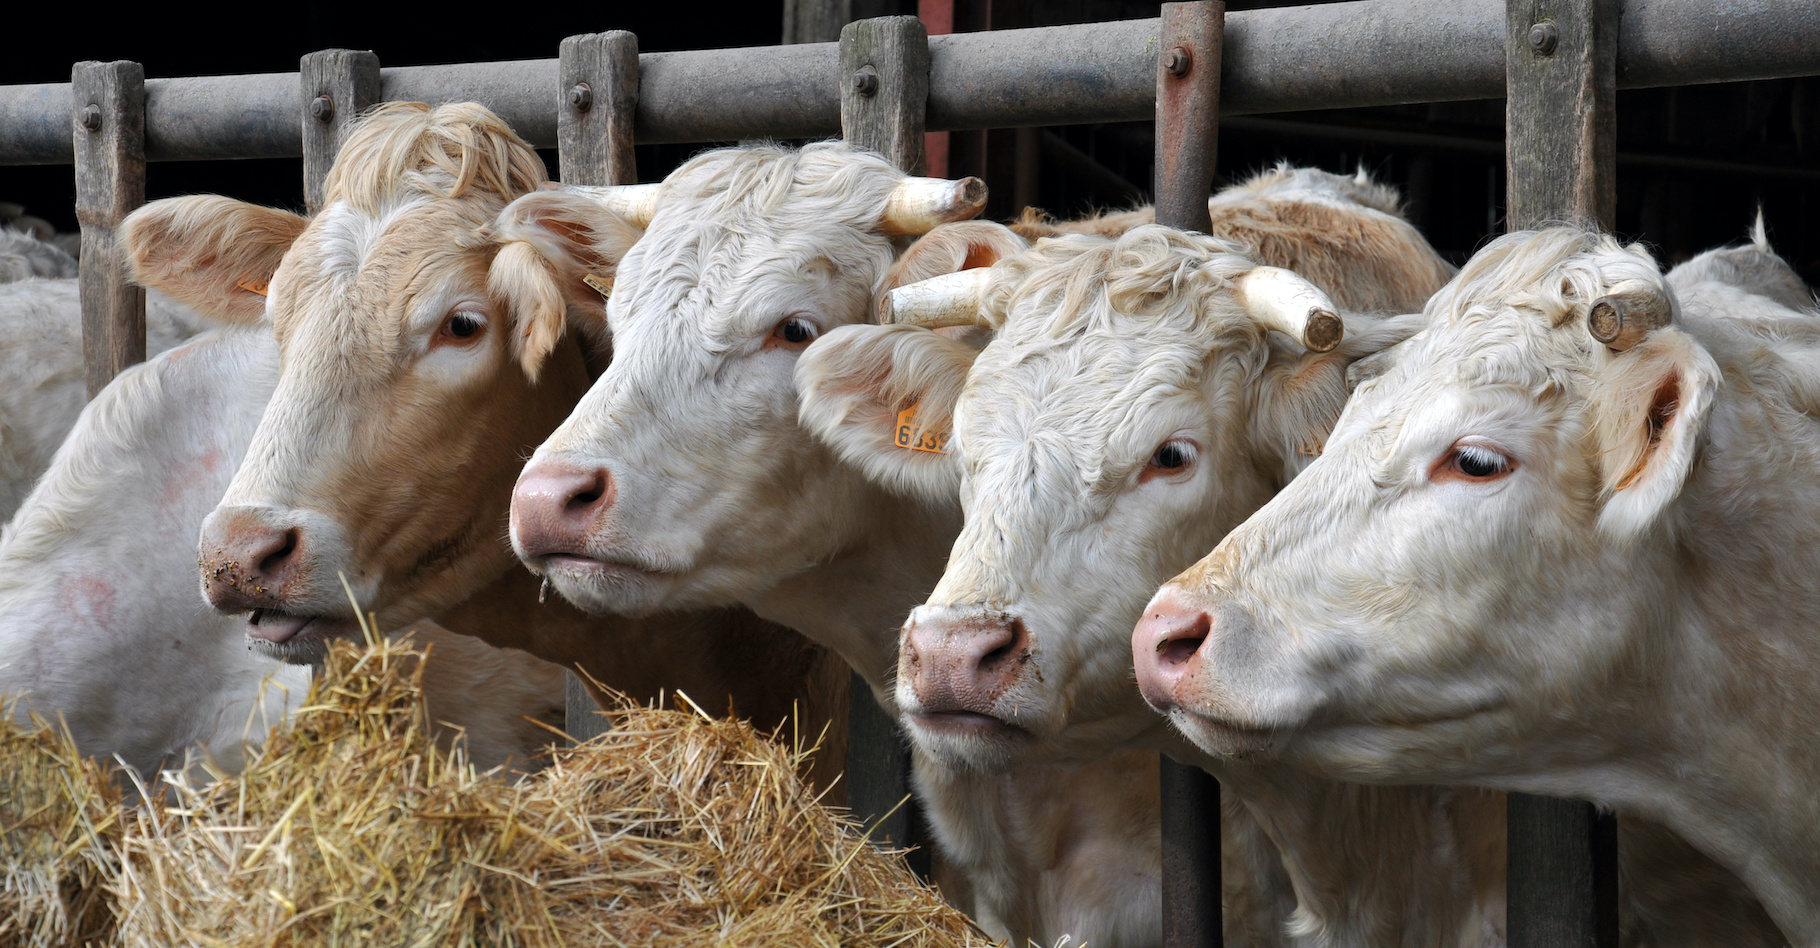 L’agriculture et l’élevage, notamment, sont des sources d’émission de méthane (CH4) de plus en plus importantes dans le monde. © coco, Adobe Stock